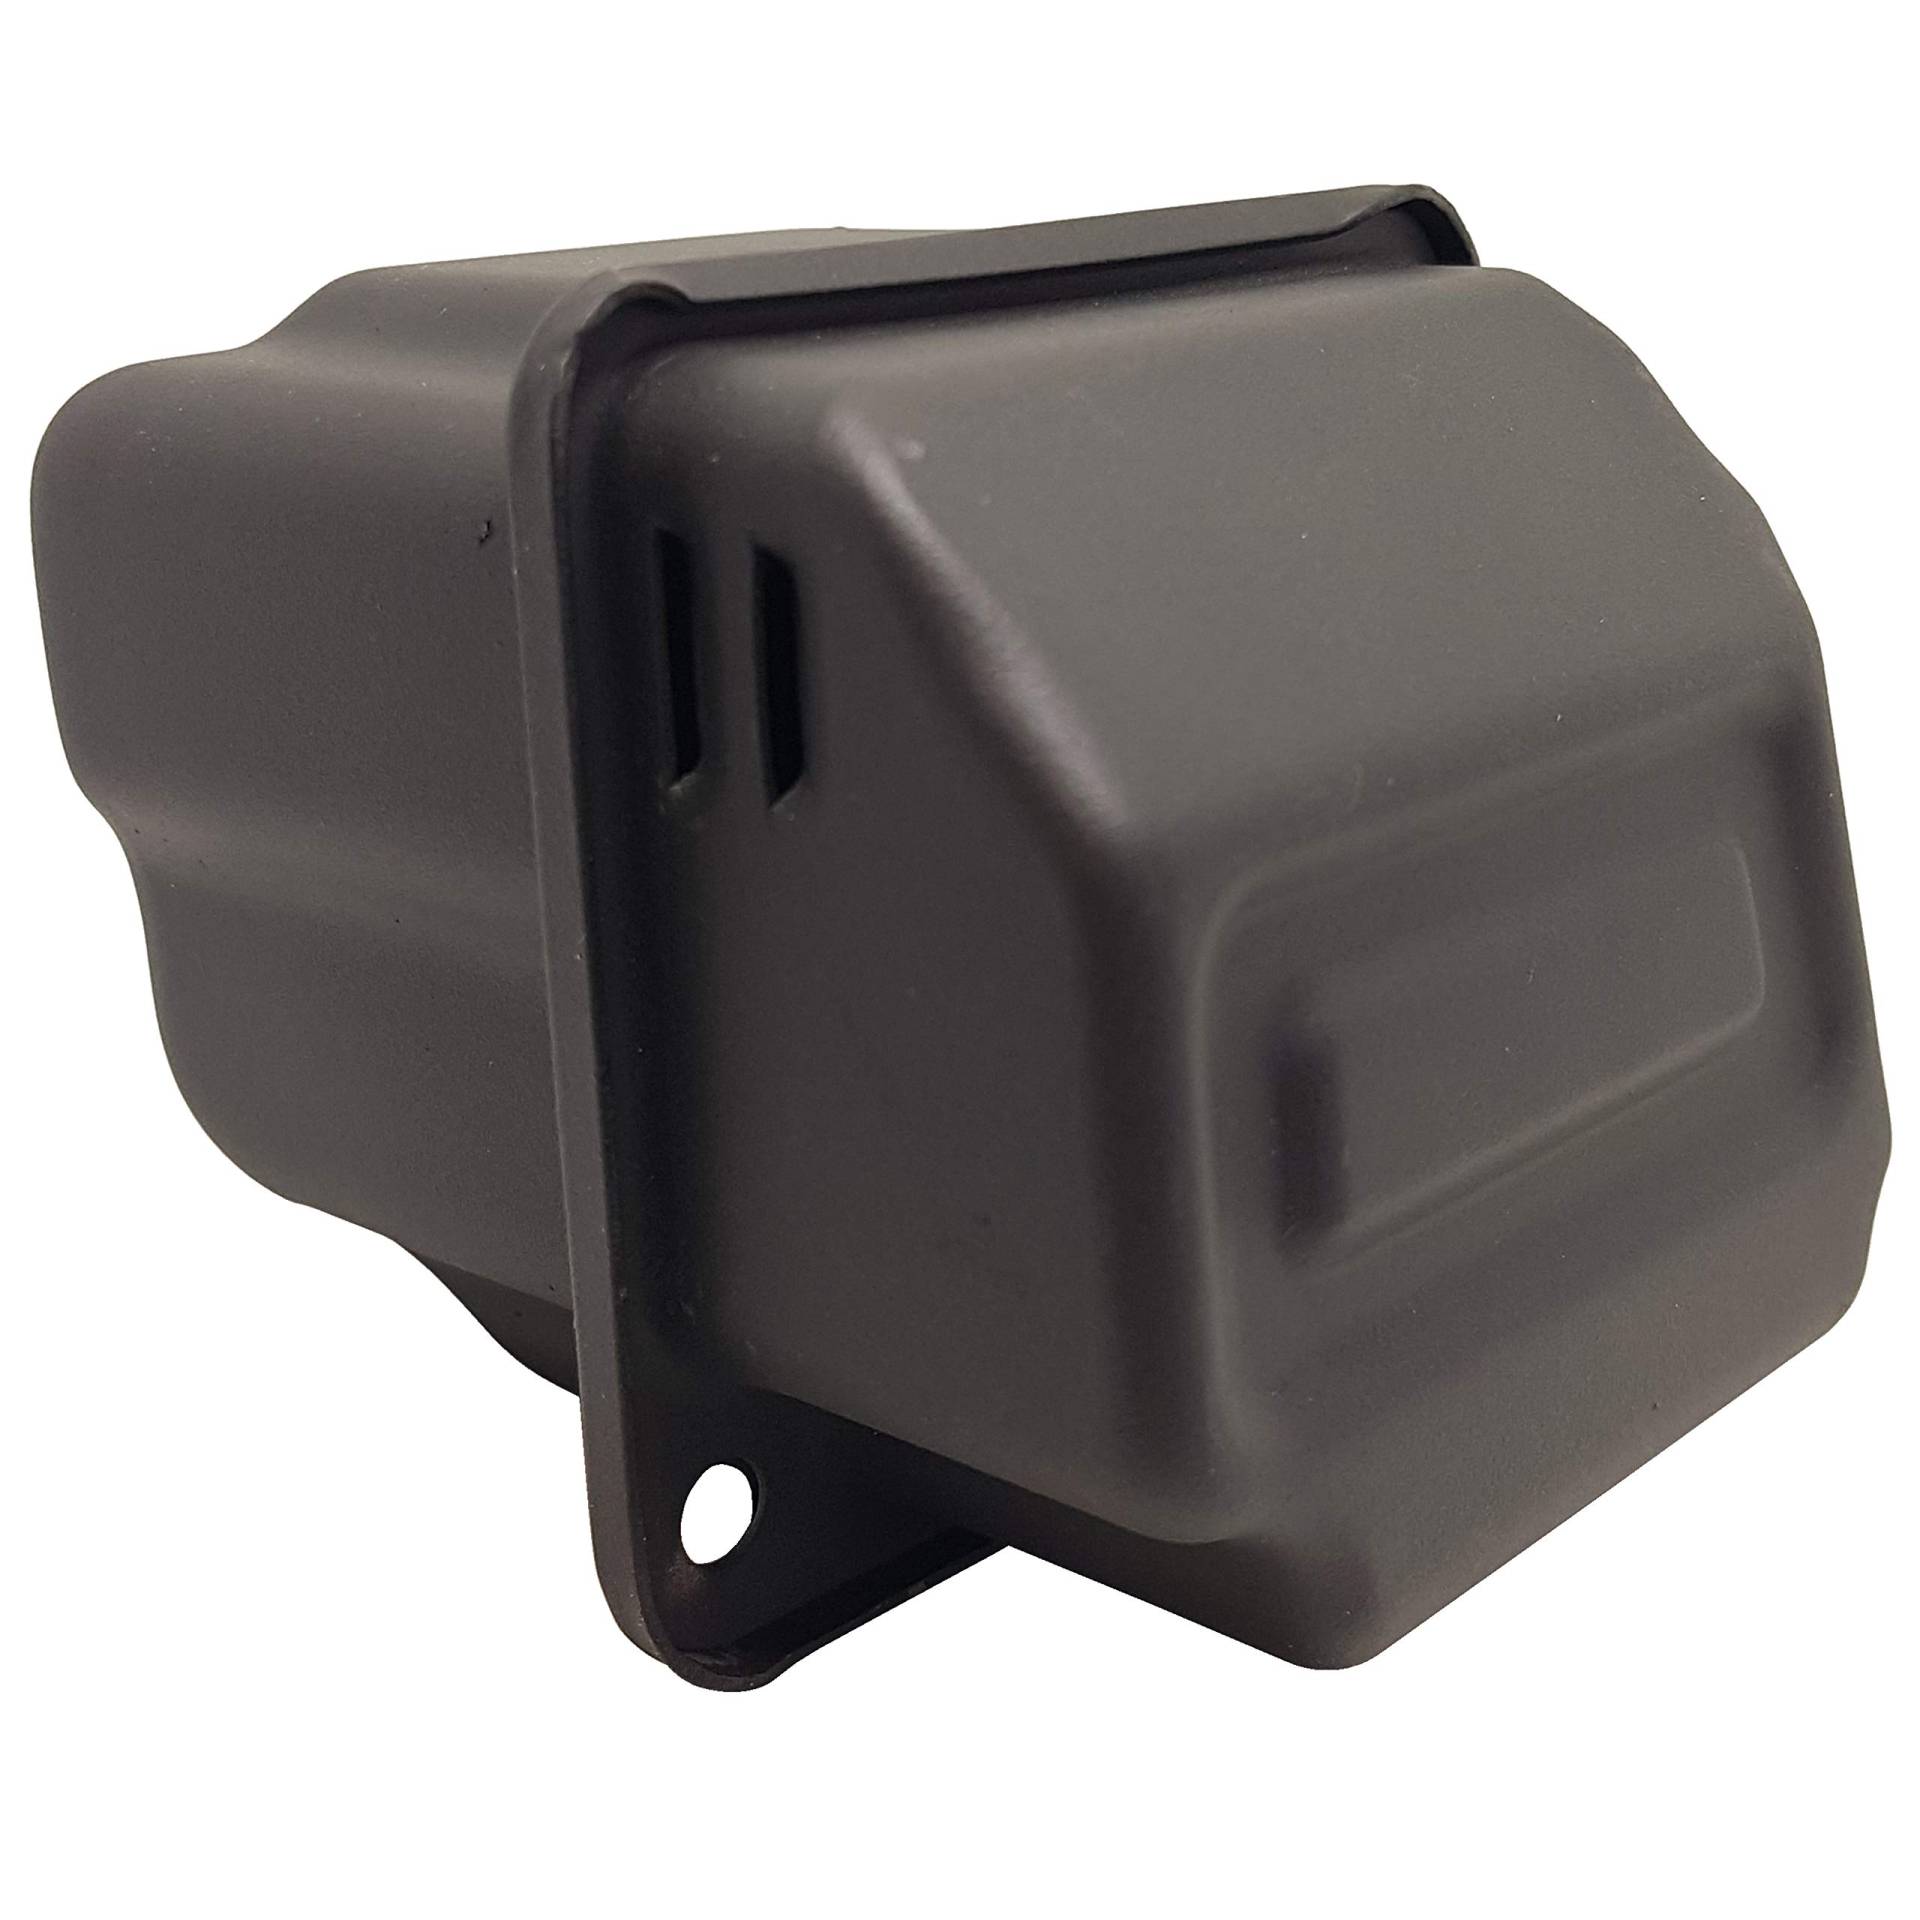 Buy-Ruk Auspuff Schalldämpfer Kompatibel mit Stihl 024 MS240 MS 240 Muffler Baseh von Buy-Ruk